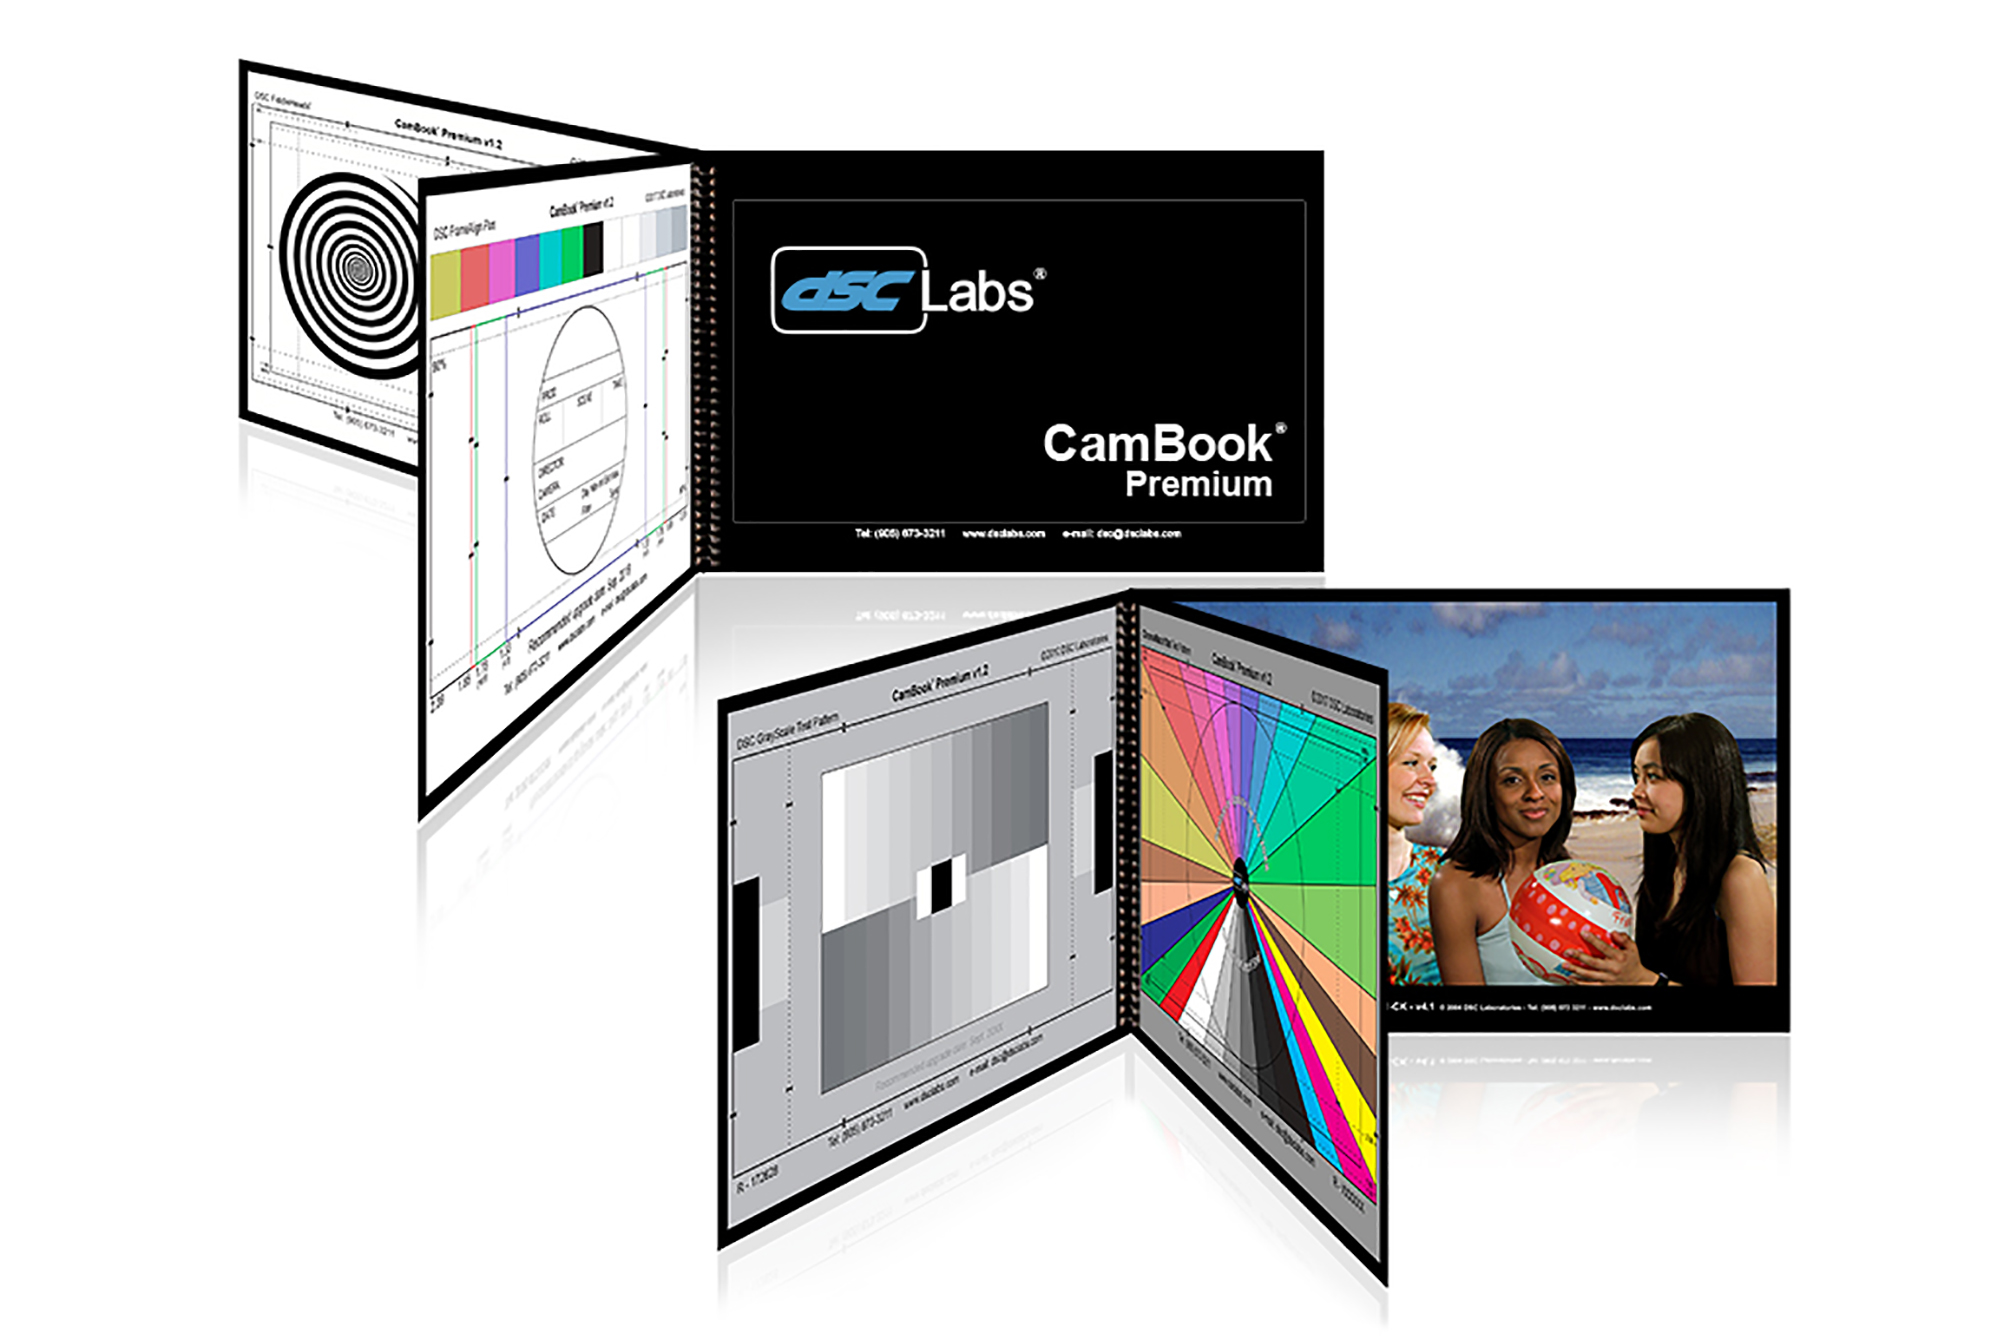 DSC Labs CamBook Premium